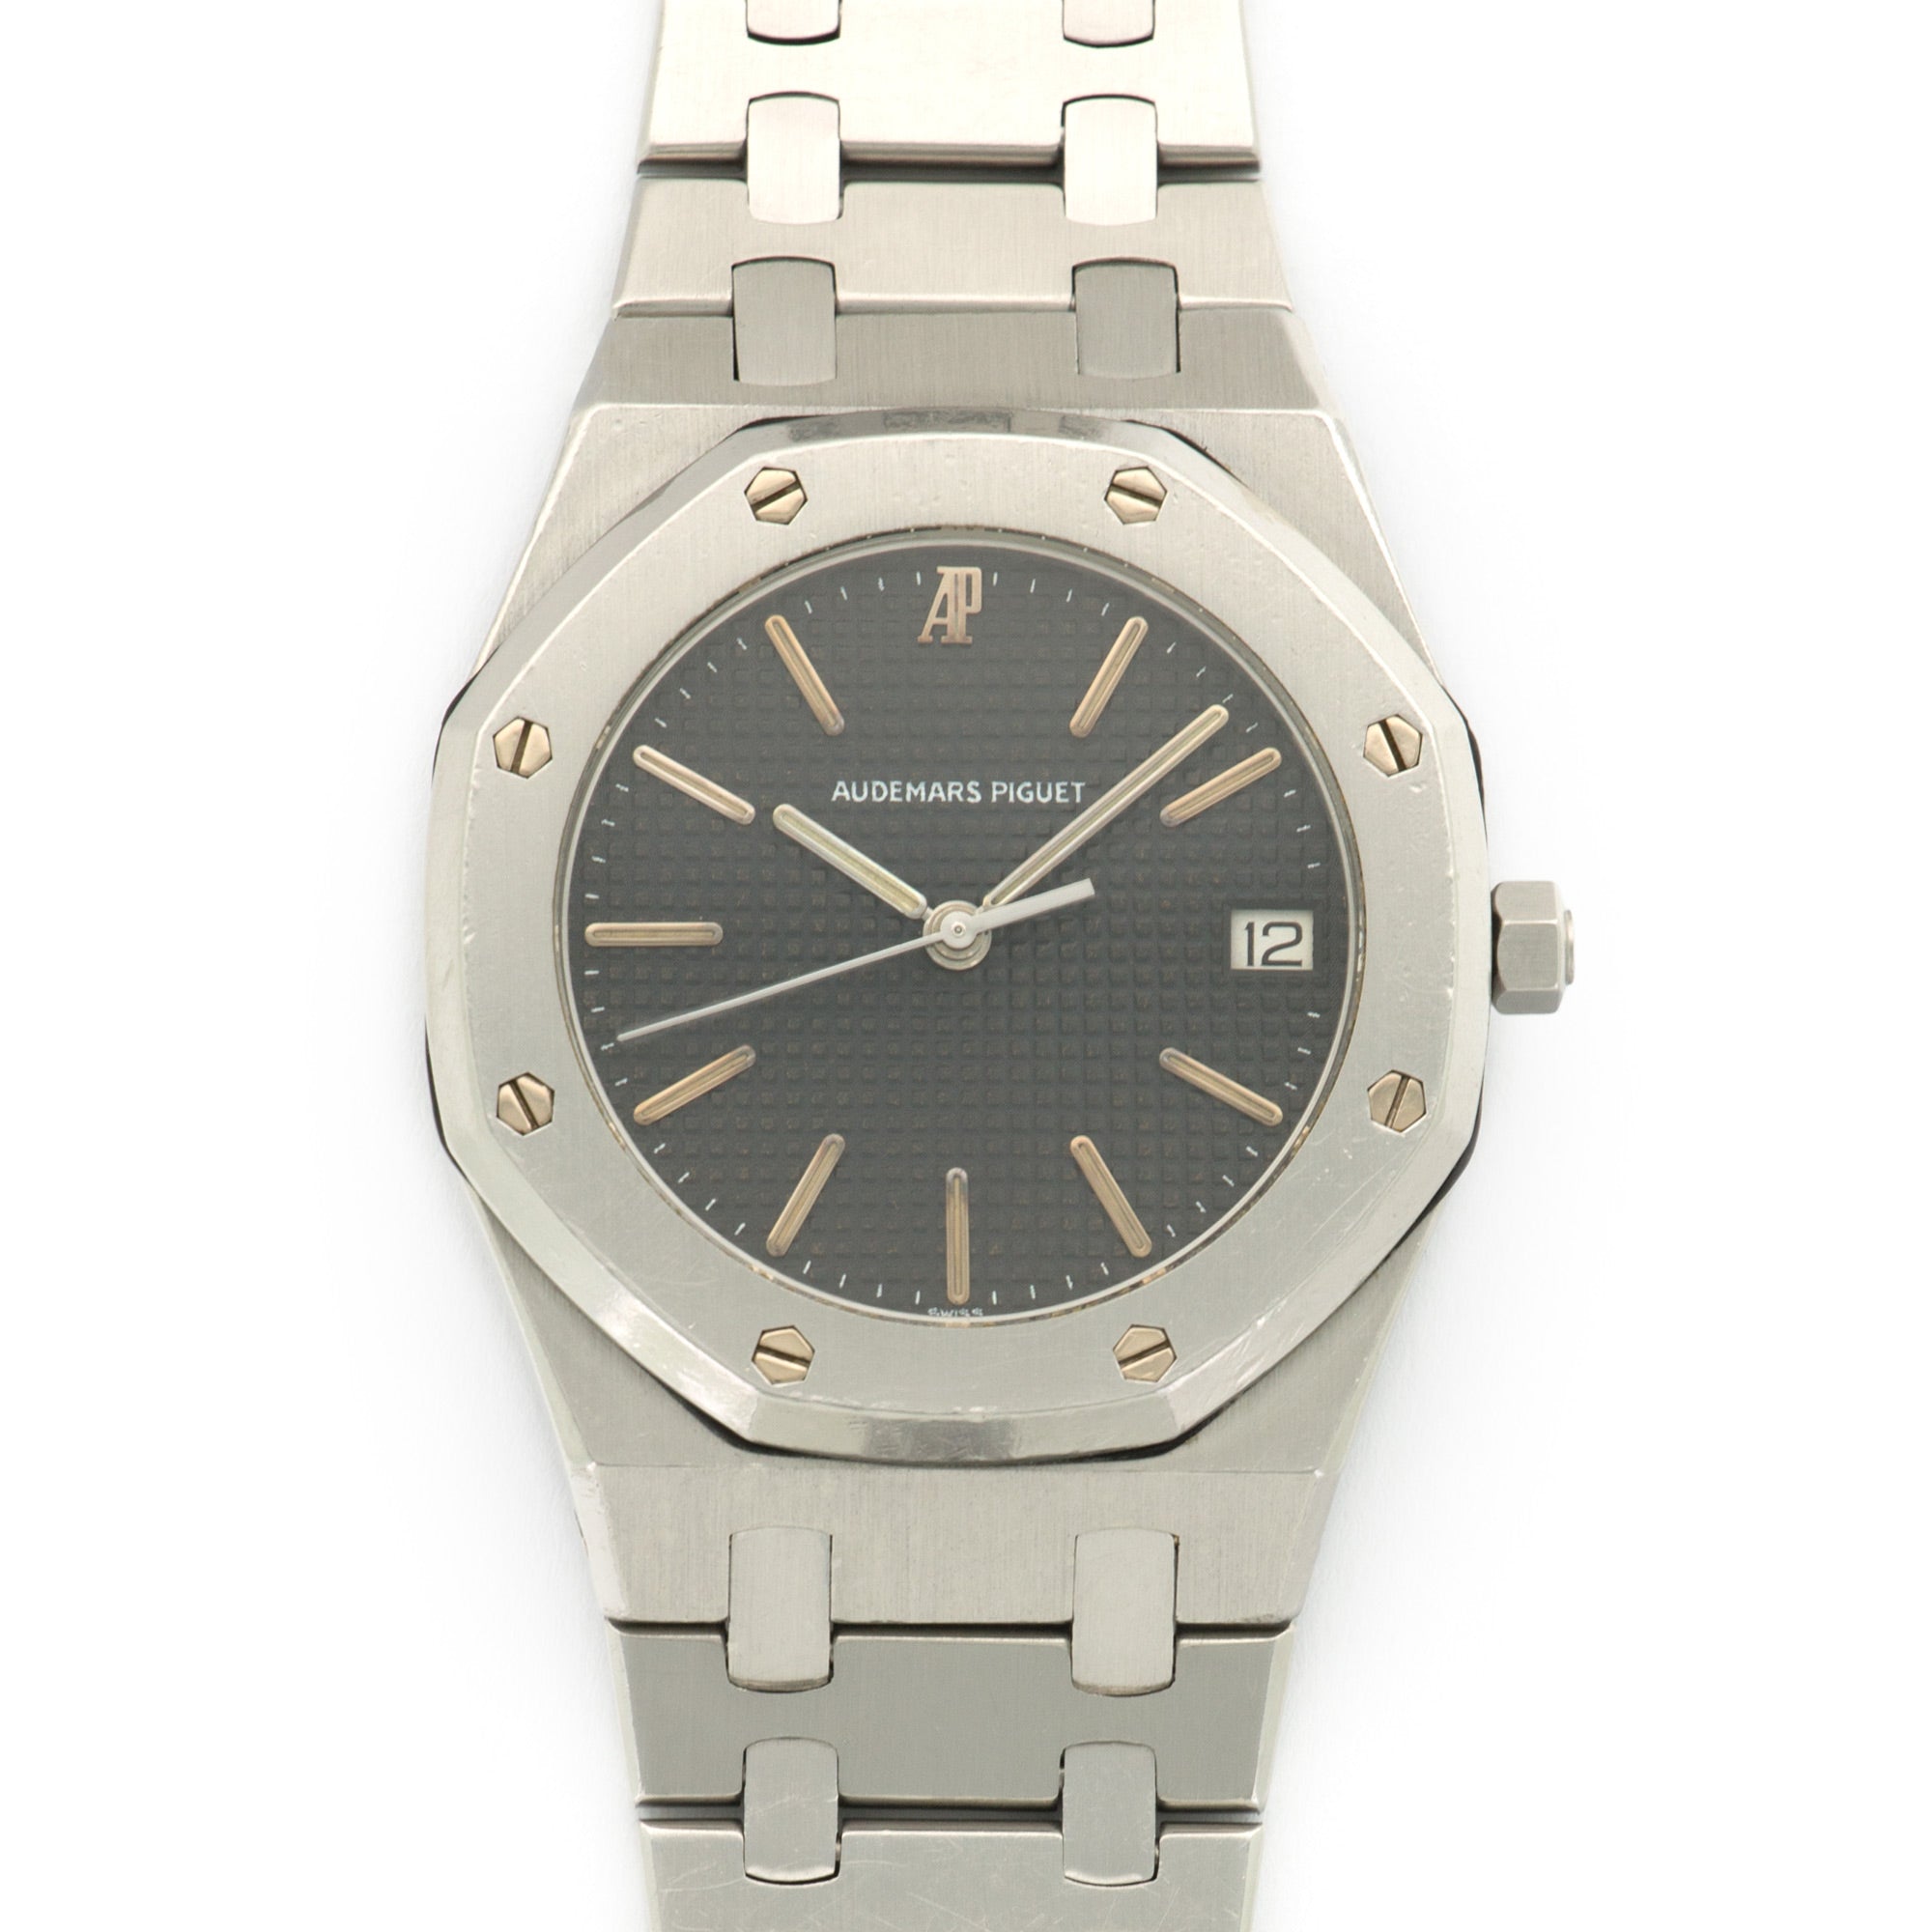 Audemars Piguet - Audemars Piguet Stainless Steel Royal Oak Watch - The Keystone Watches